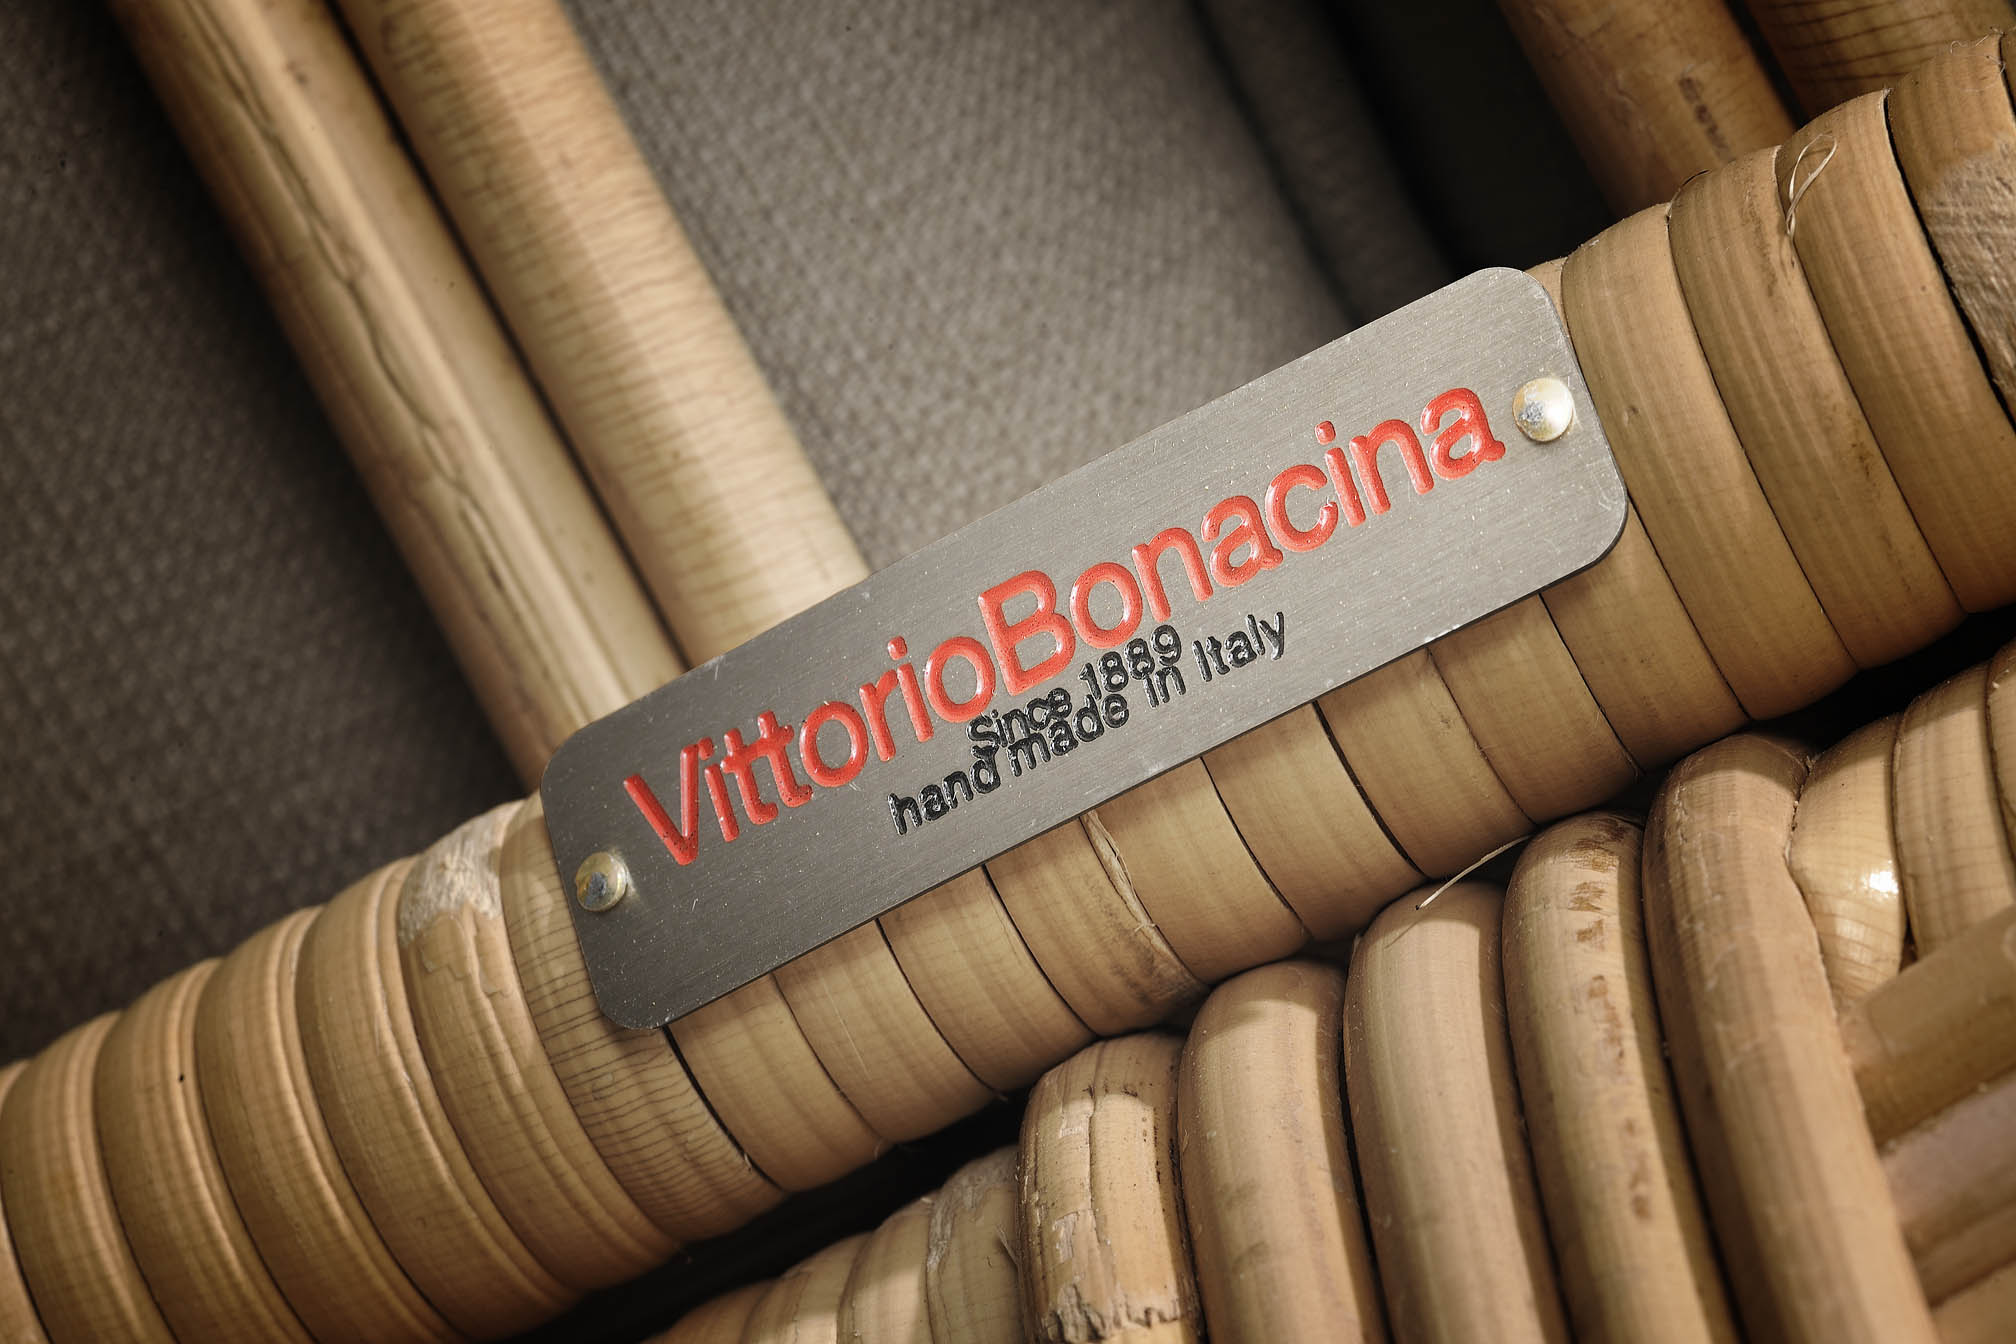 L'etichetta metallica sul midollino Vittorio Bonacina